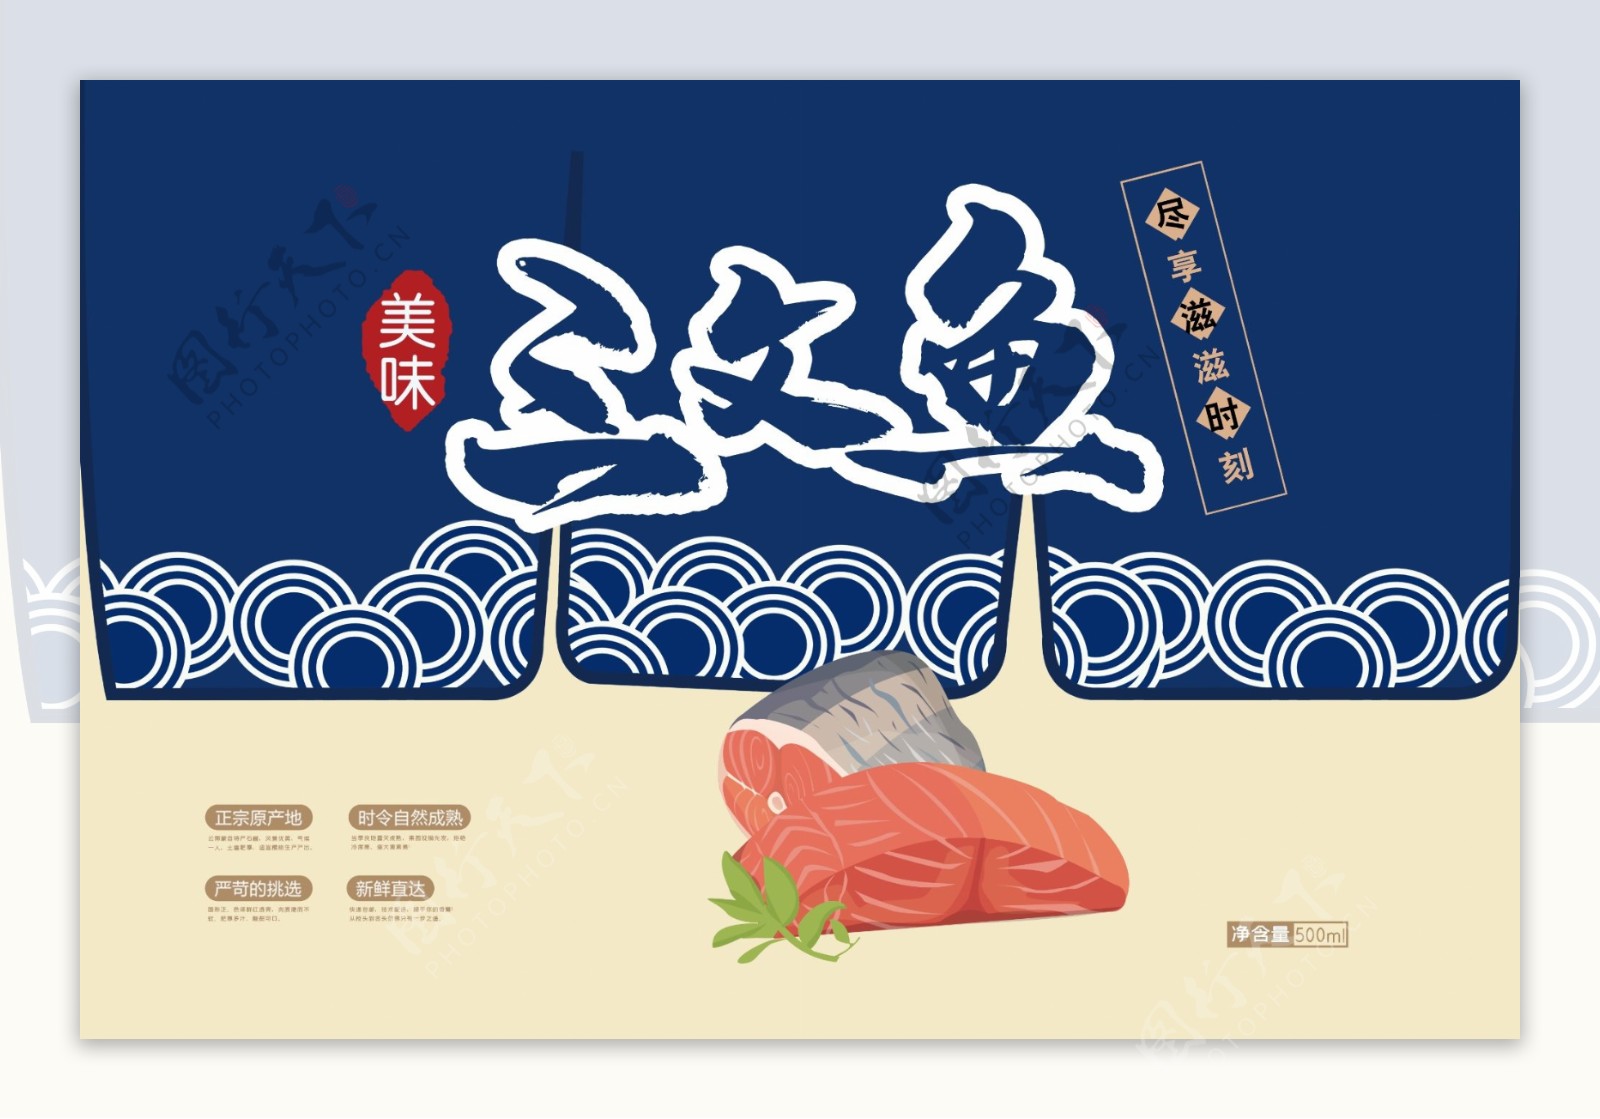 简约插画新鲜三文鱼海鱼海鲜食品包装设计